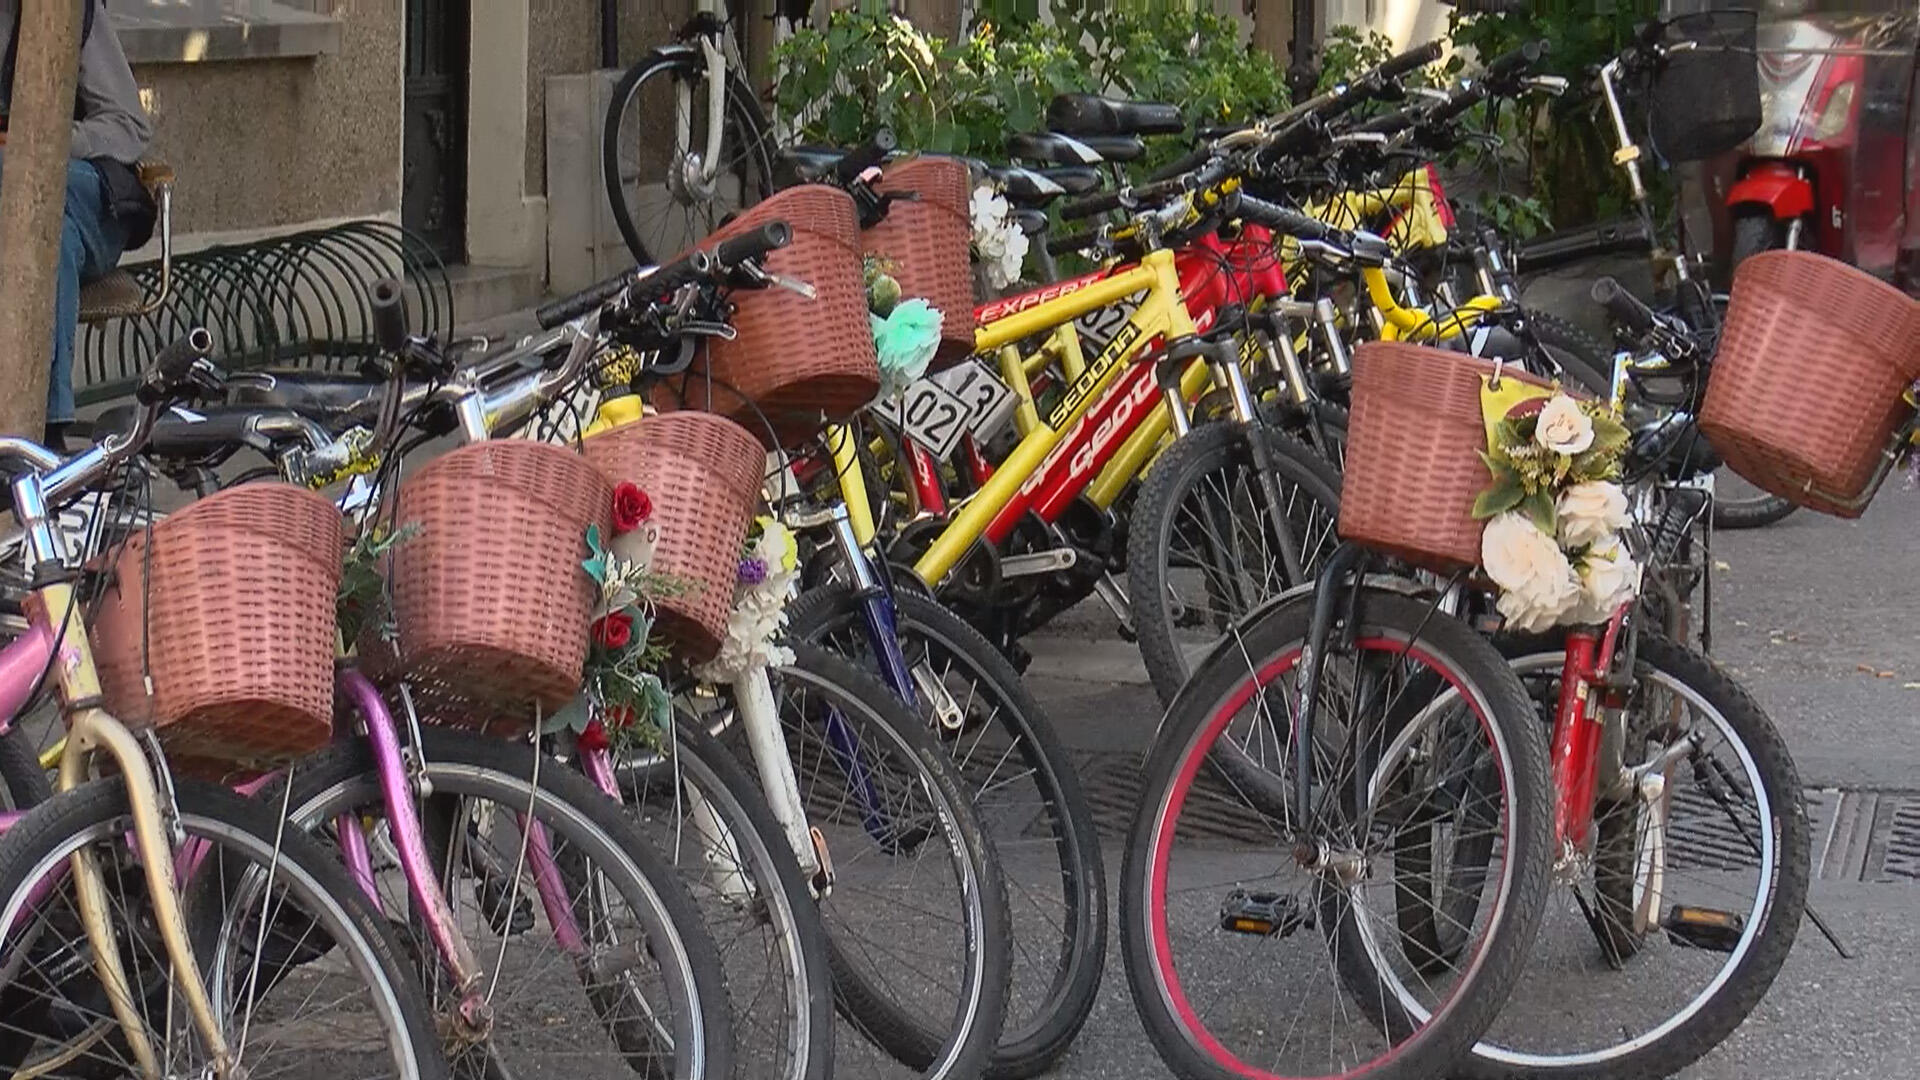 Adalarda akülü araçlara yasak gelince bisikletlere talep arttı